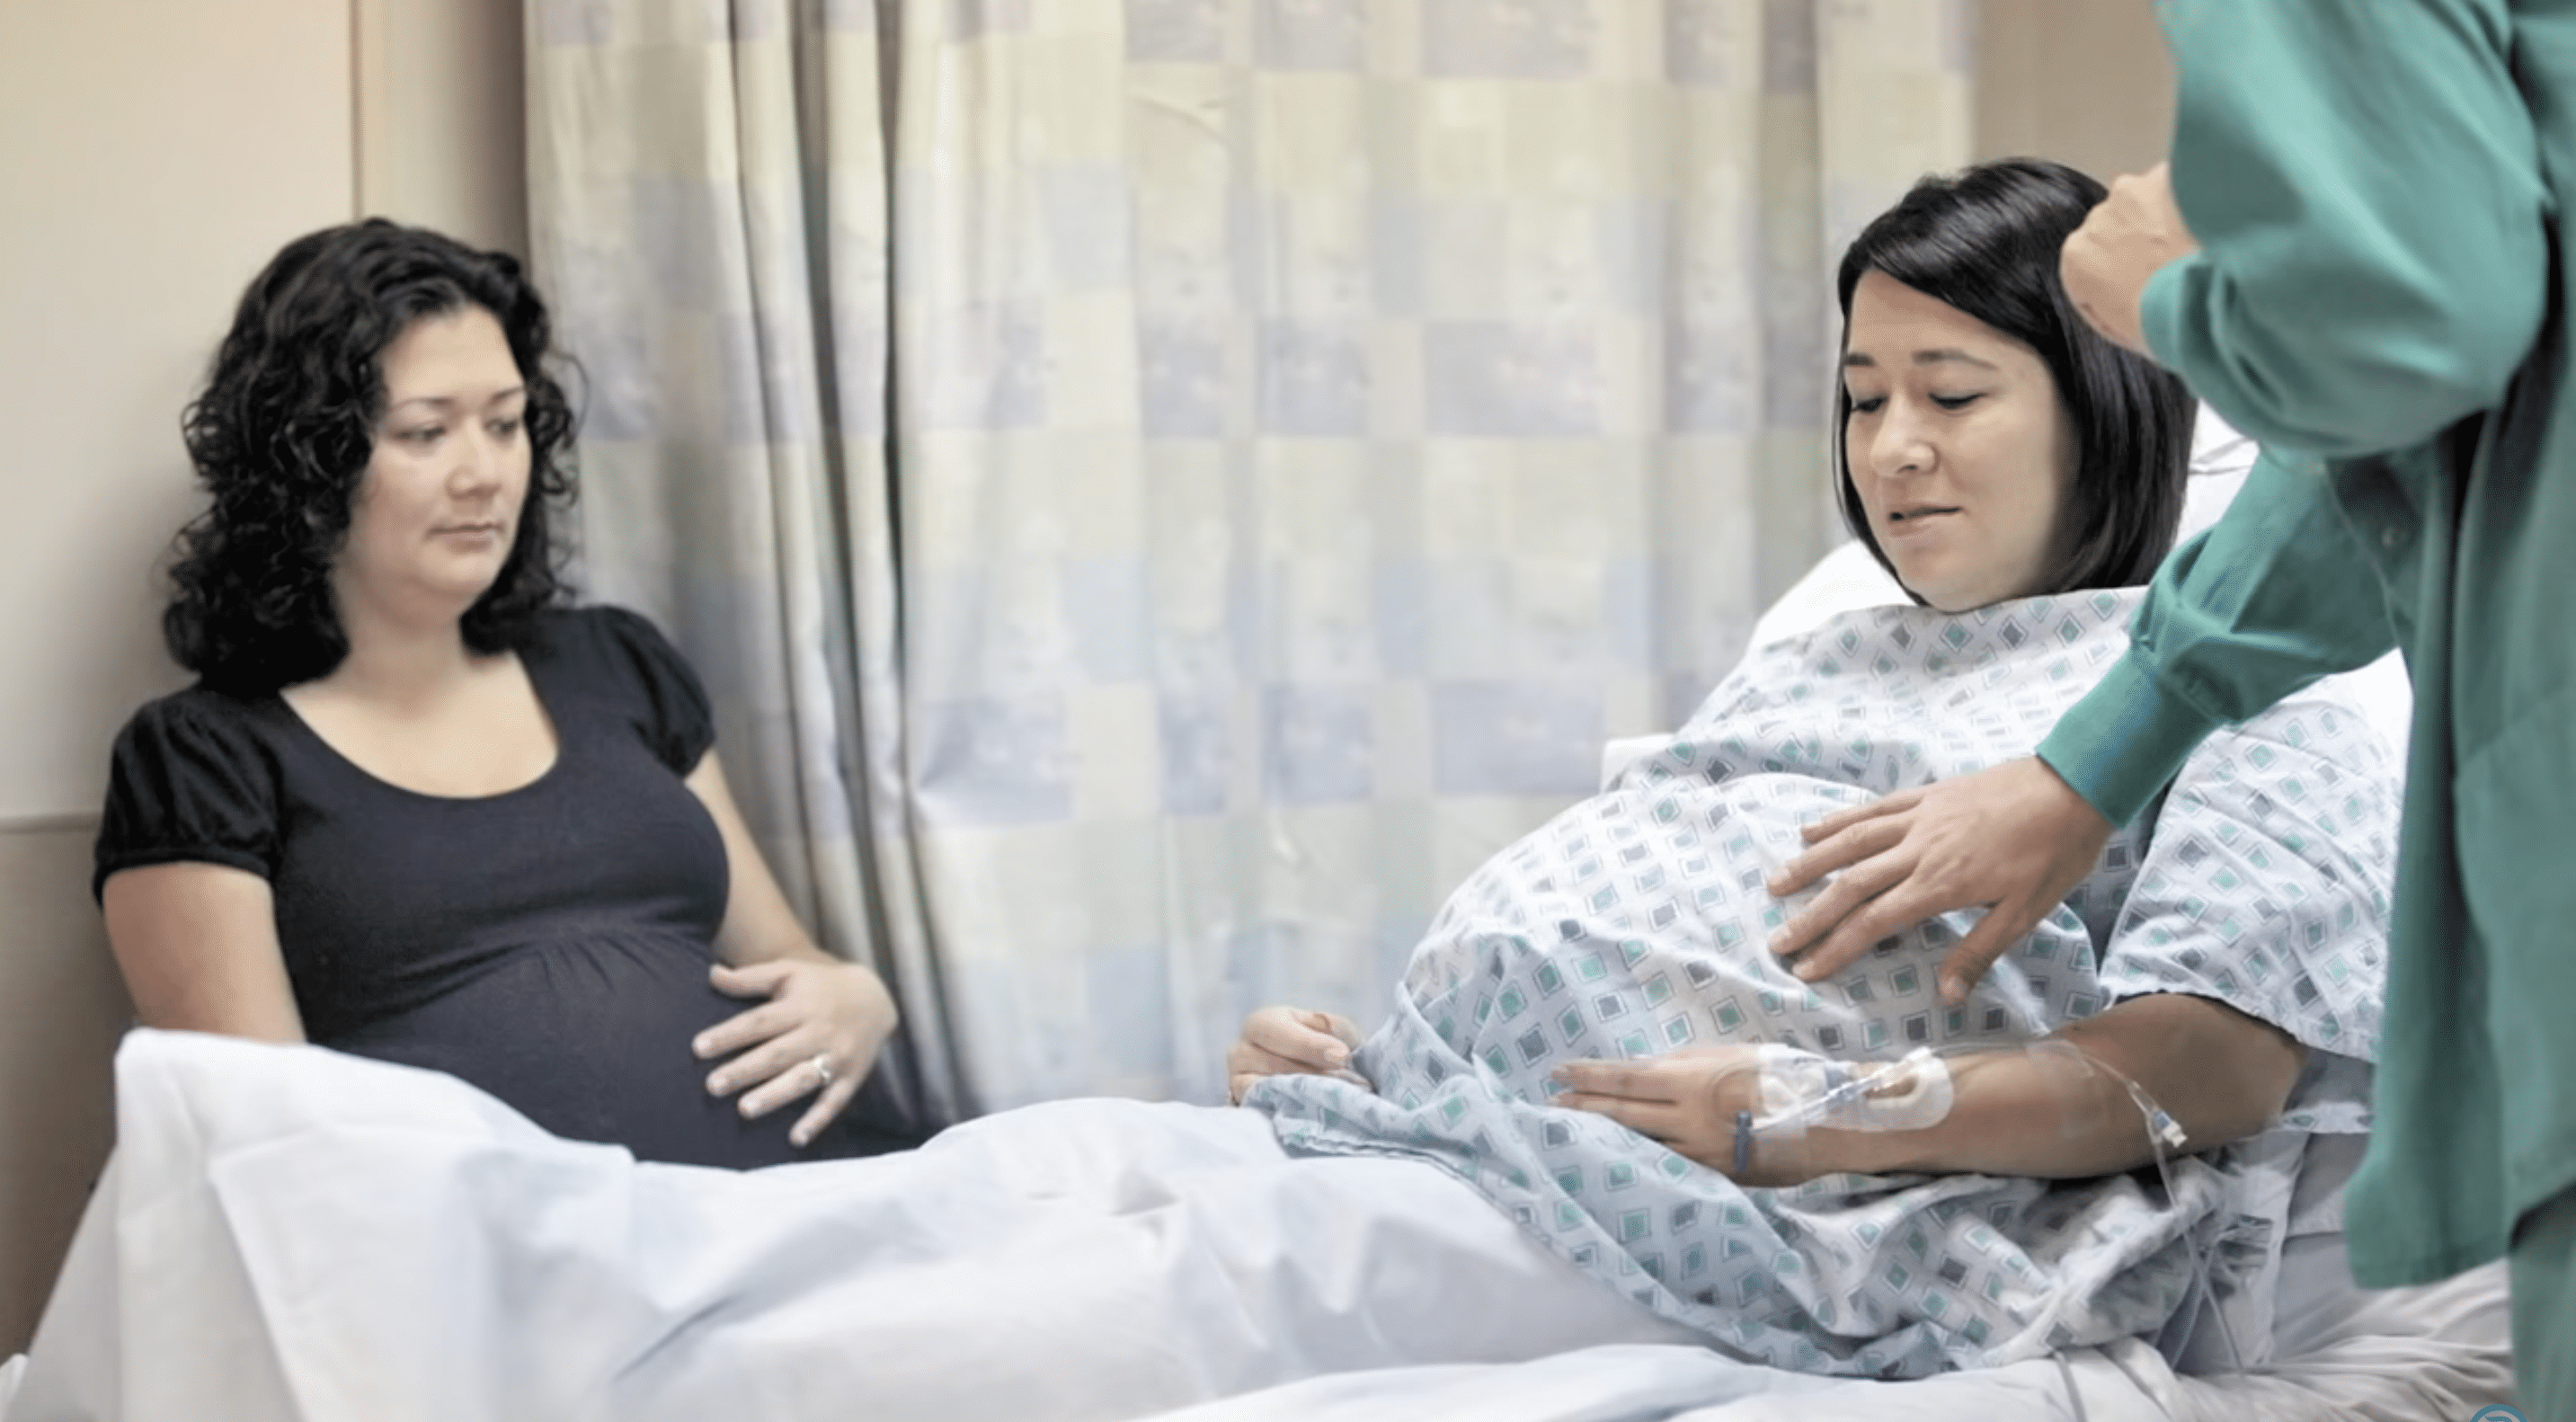 Annie Johnston und Chrissy Knott während der Schwangerschaft mit Vierlingen. | Quelle: YouTube.com/TheColumbusDispatch